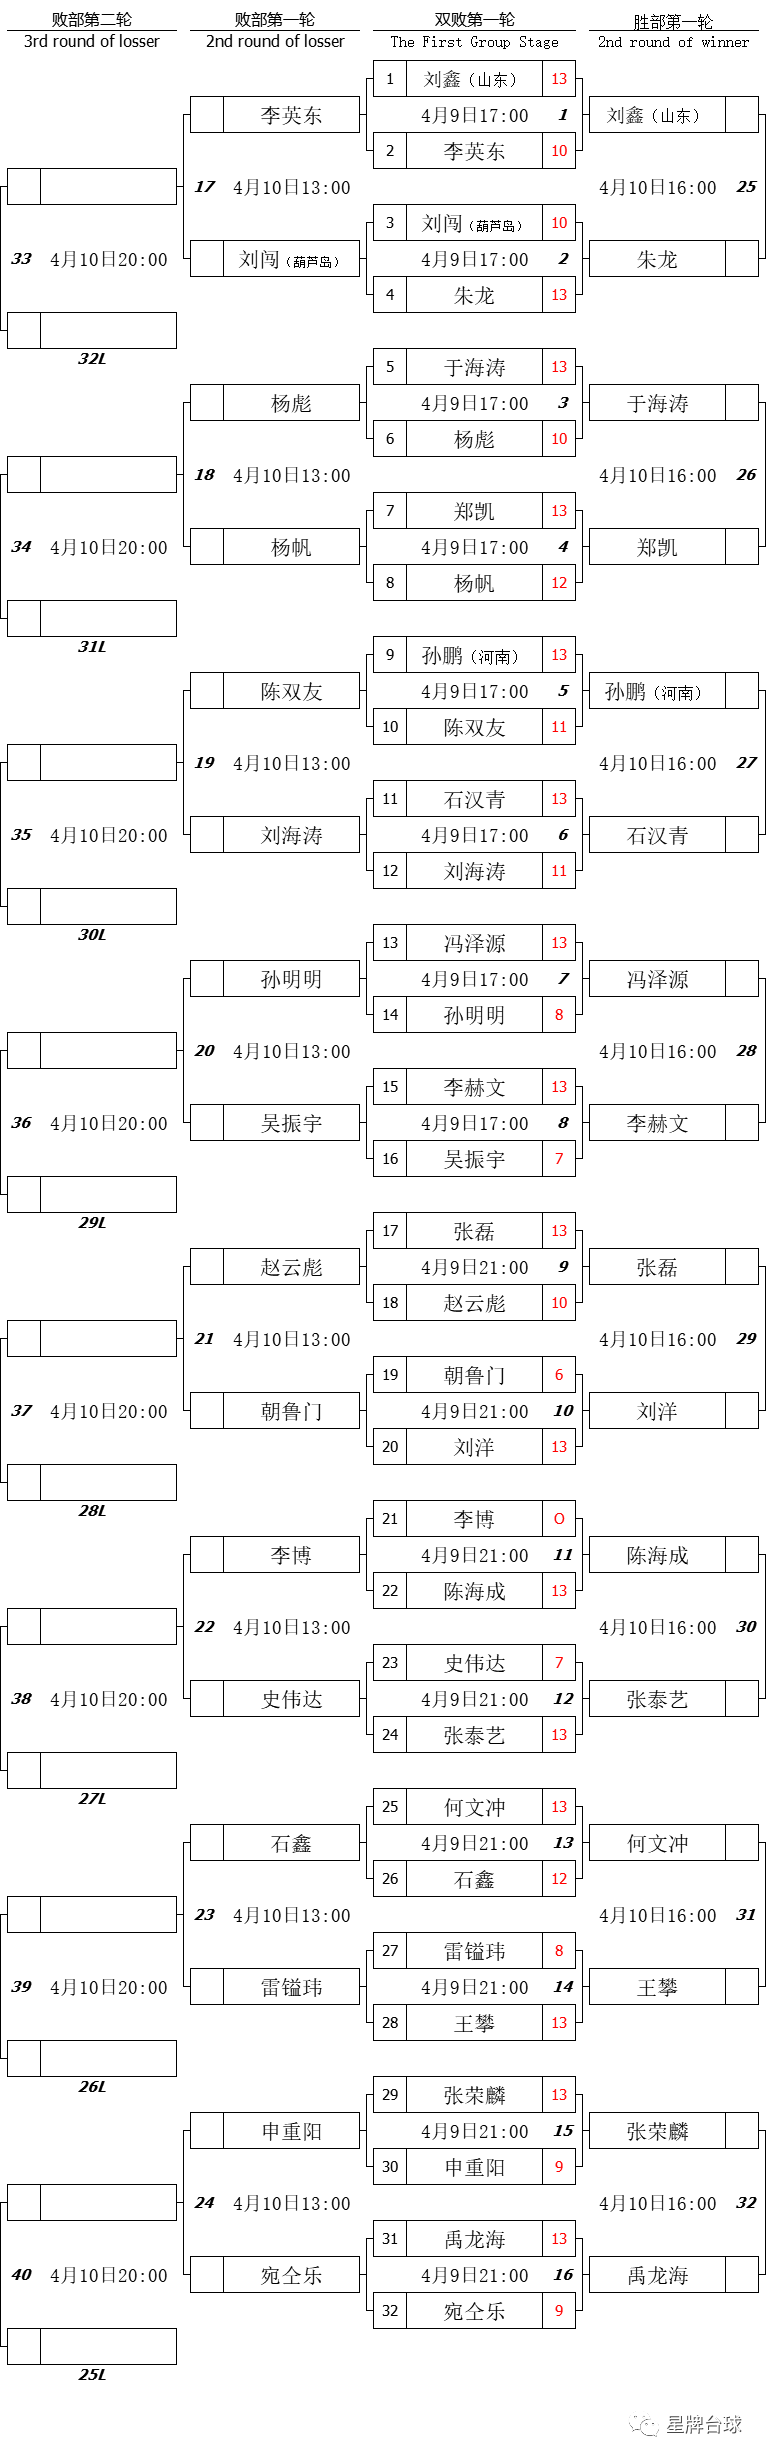 【精英巡回赛预选赛】石汉青超级逆转 禹龙海一日双胜